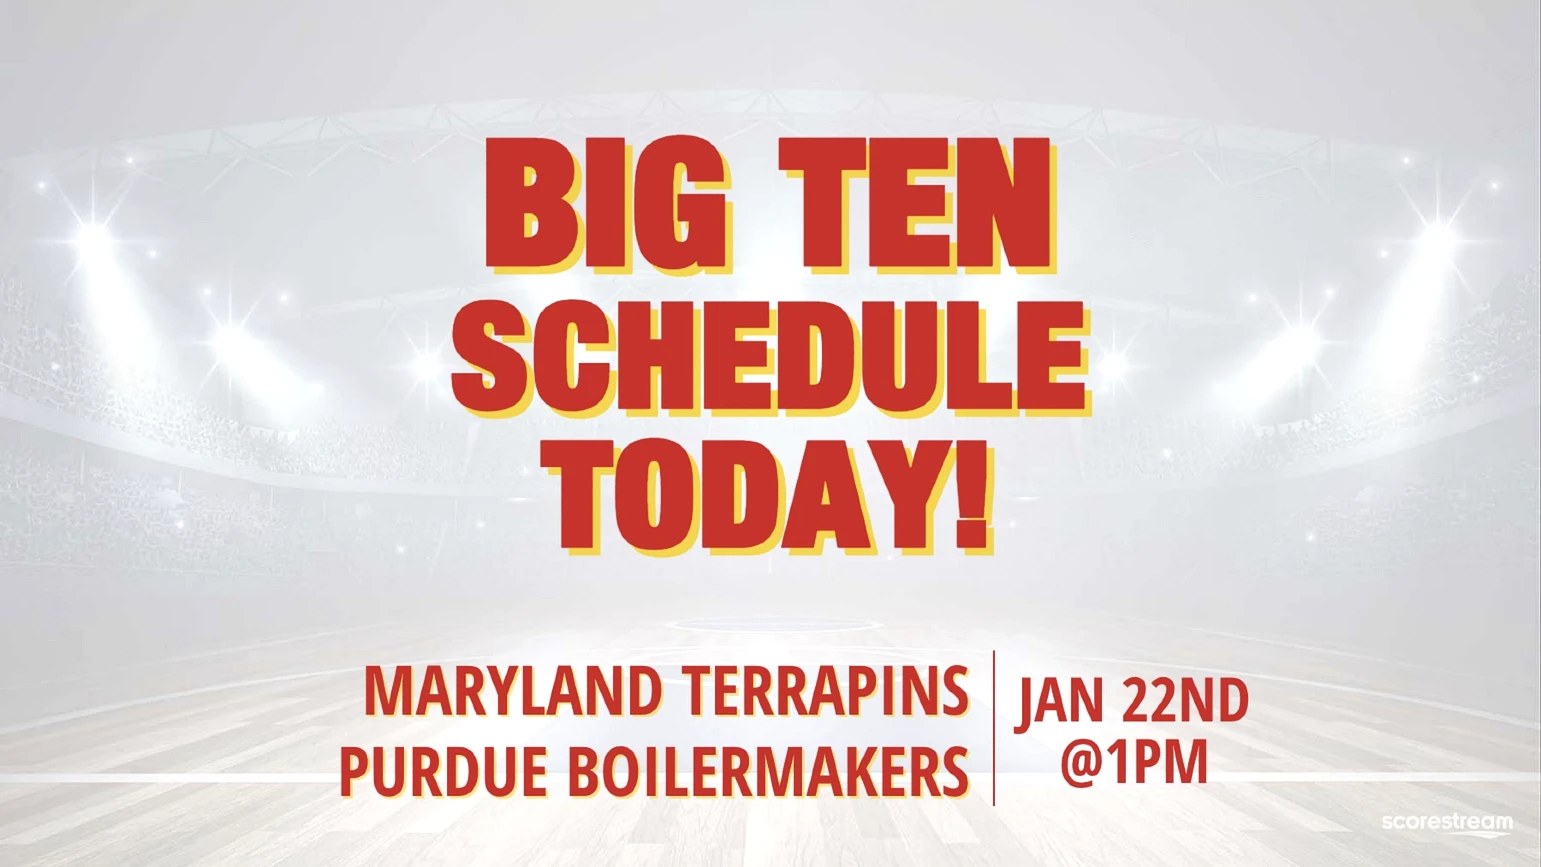 Big Ten men's basketball schedule today on Jan. 22